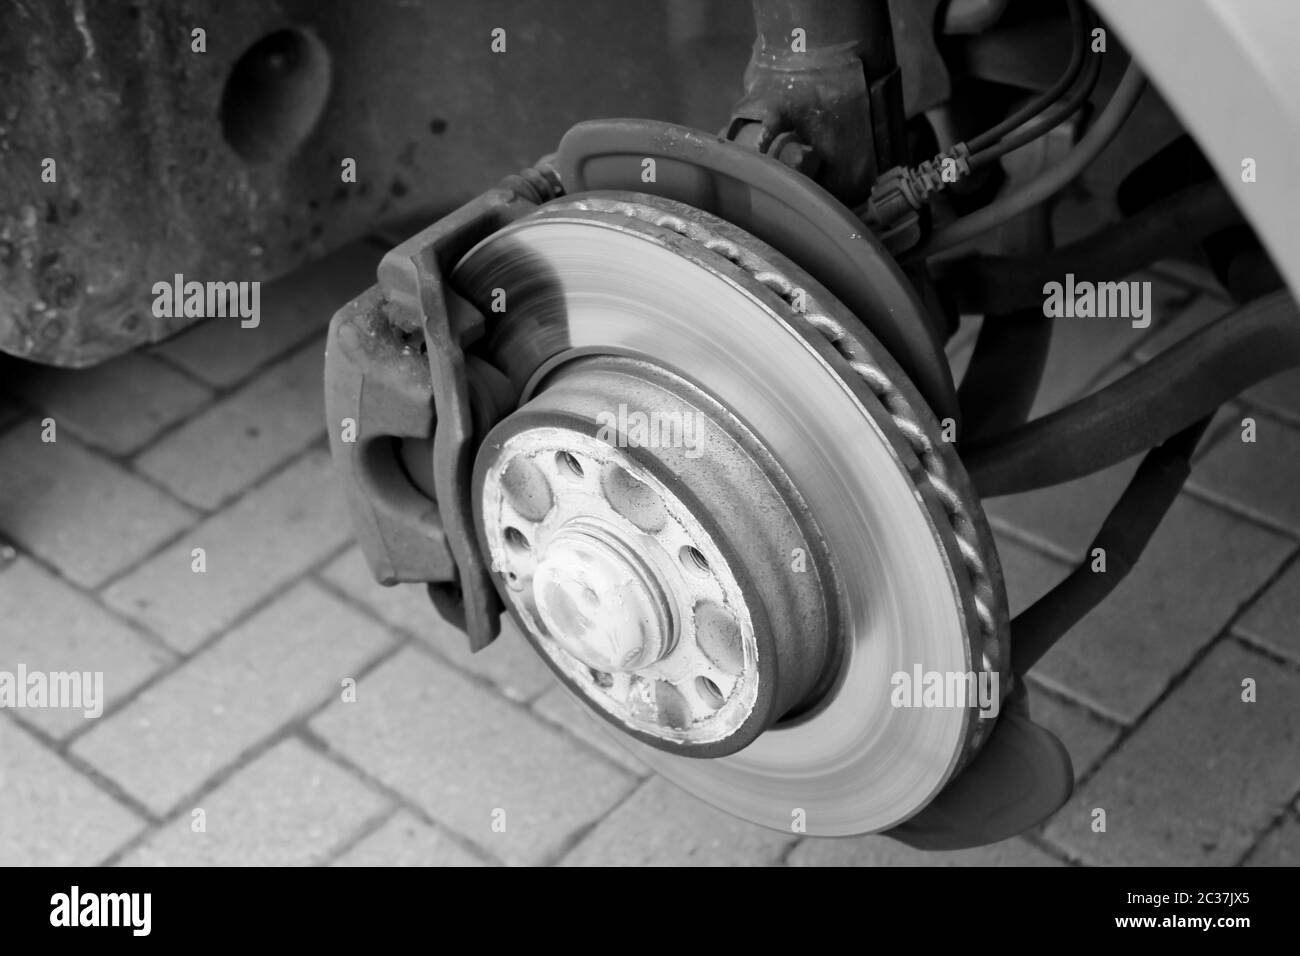 Auto Bremsscheiben und Bremsbeläge Stockfotografie - Alamy